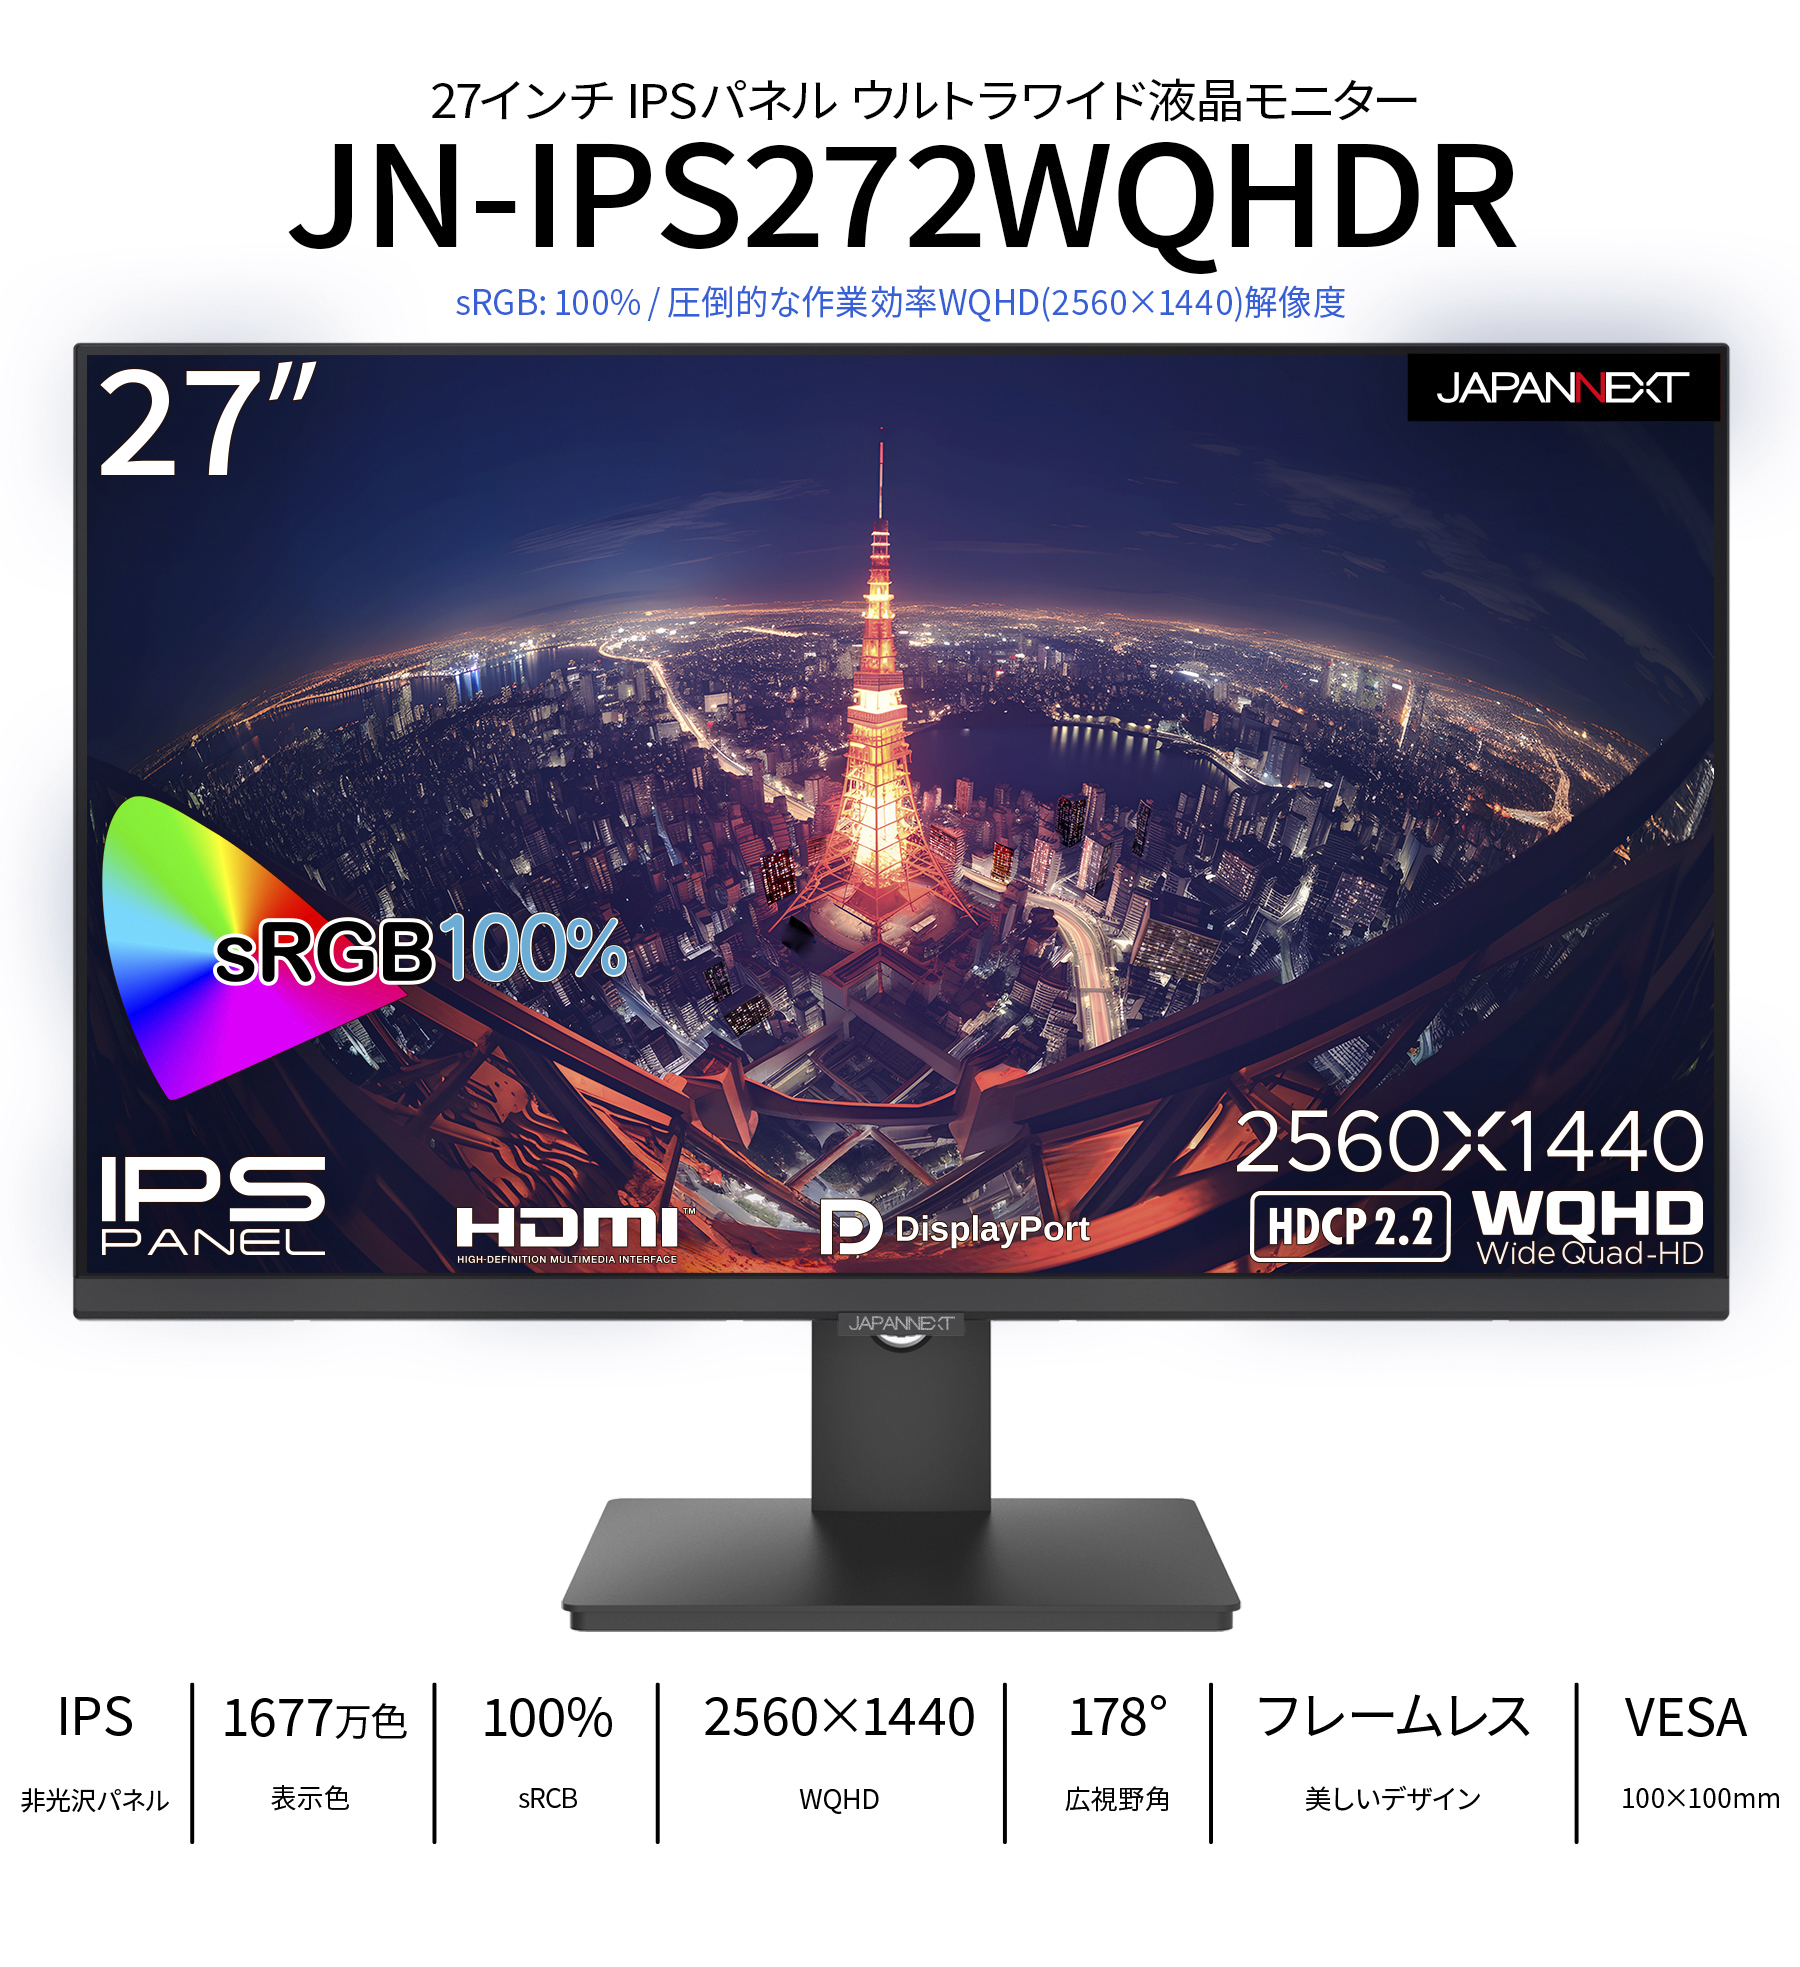 JAPANNEXT IPSパネル搭載27インチ WQHD解像度液晶モニターJN-IPS272WQHDR HDMI DP 液晶ディスプレイ PCモニター  パソコンモニター ジャパンネクスト